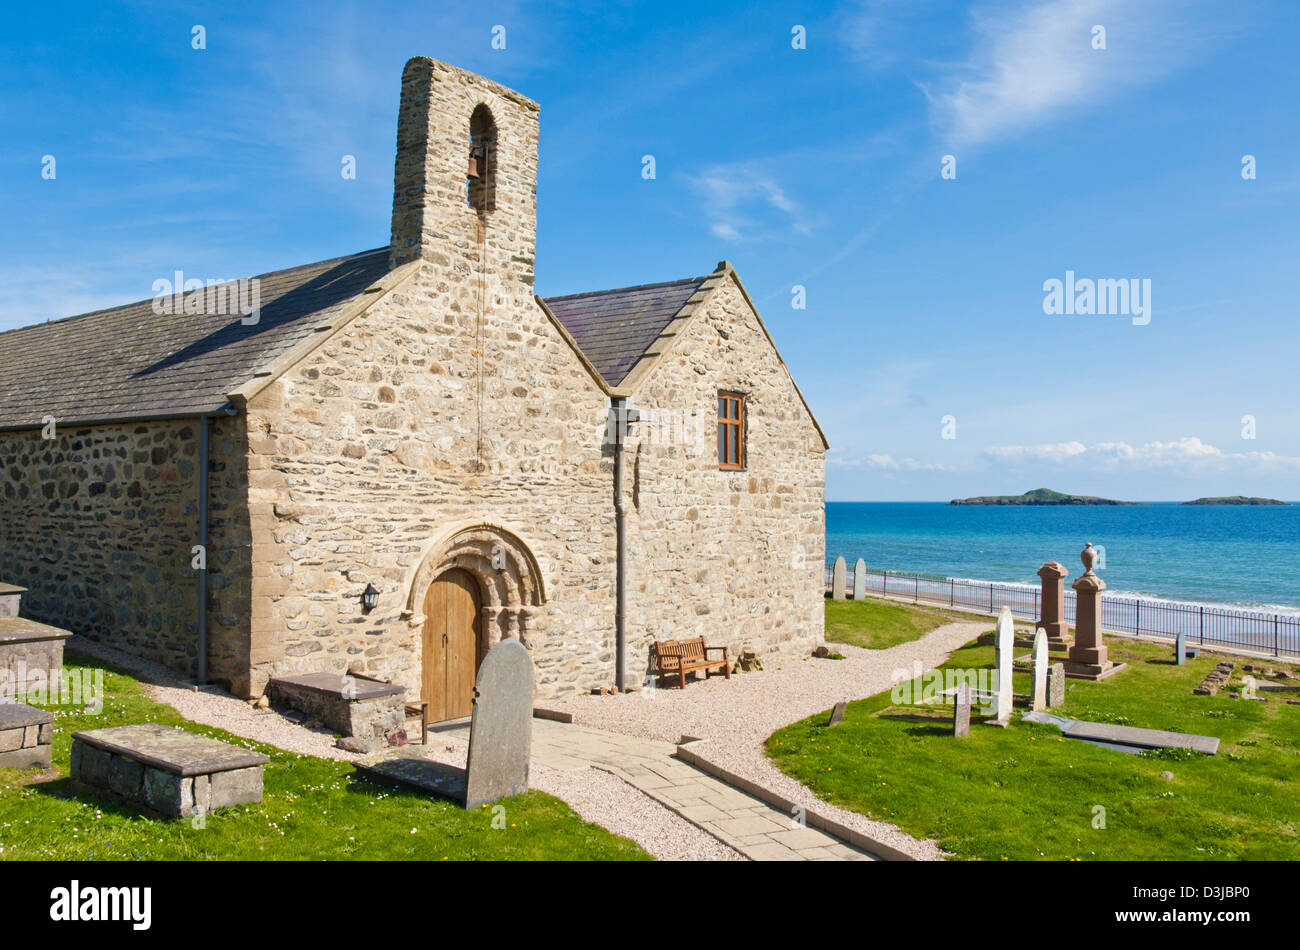 St Hywyn's church and graveyard Aberdaron LLyn Peninsula Gwynedd North Wales GB UK EU Europe Stock Photo